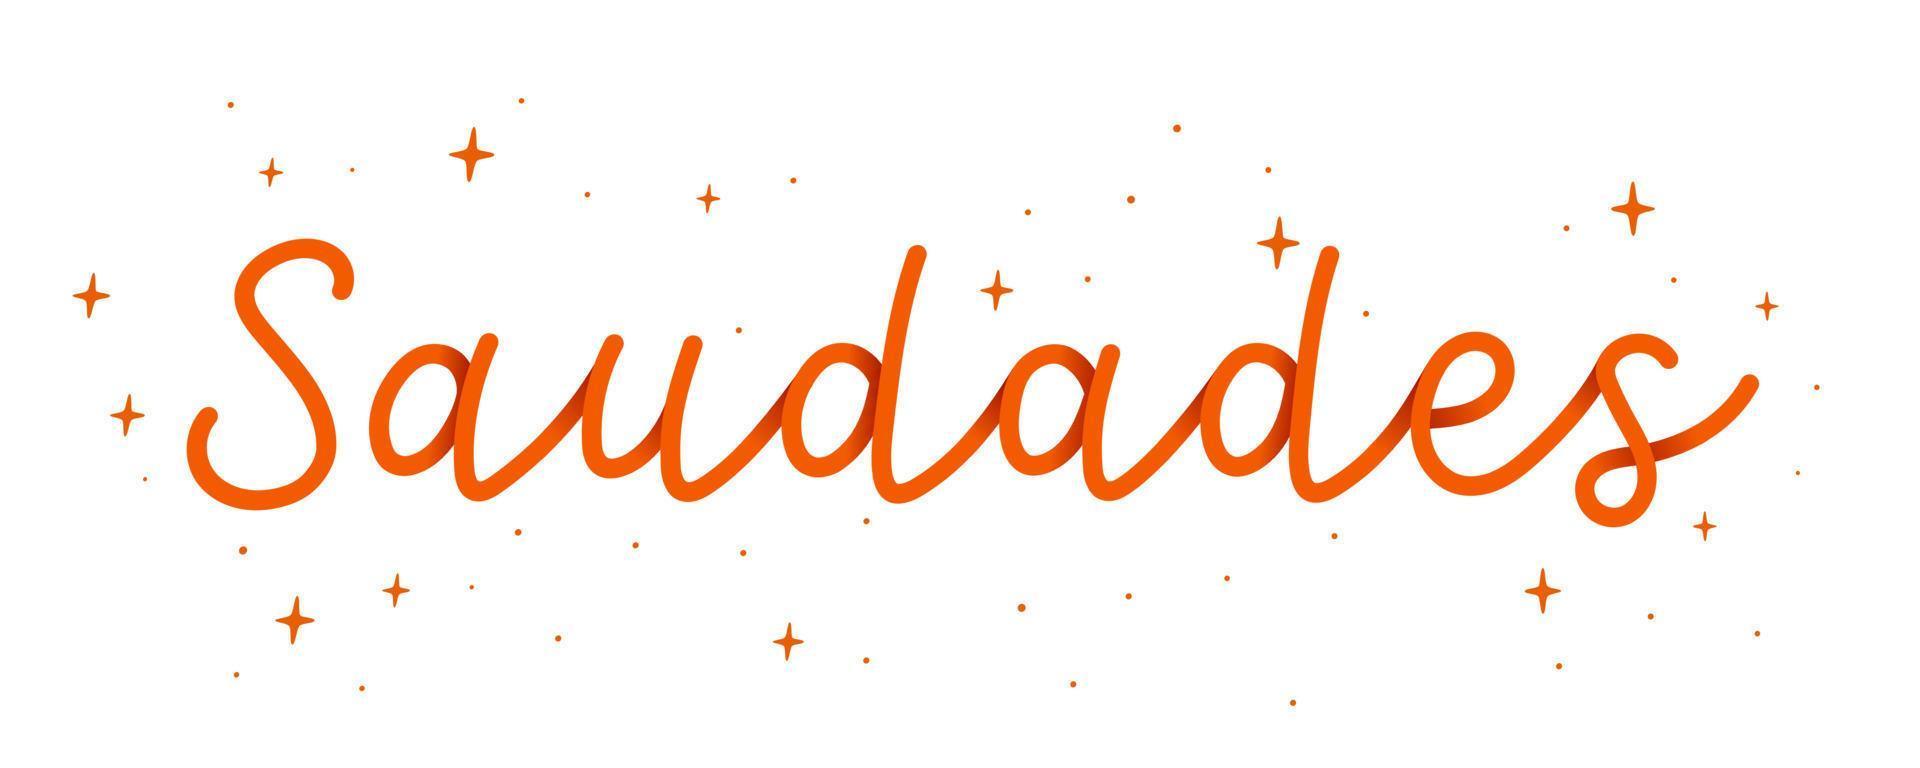 handkursives Wort orange Danke auf brasilianisches Portugiesisch mit Sternen. Übersetzung - danke. vektor